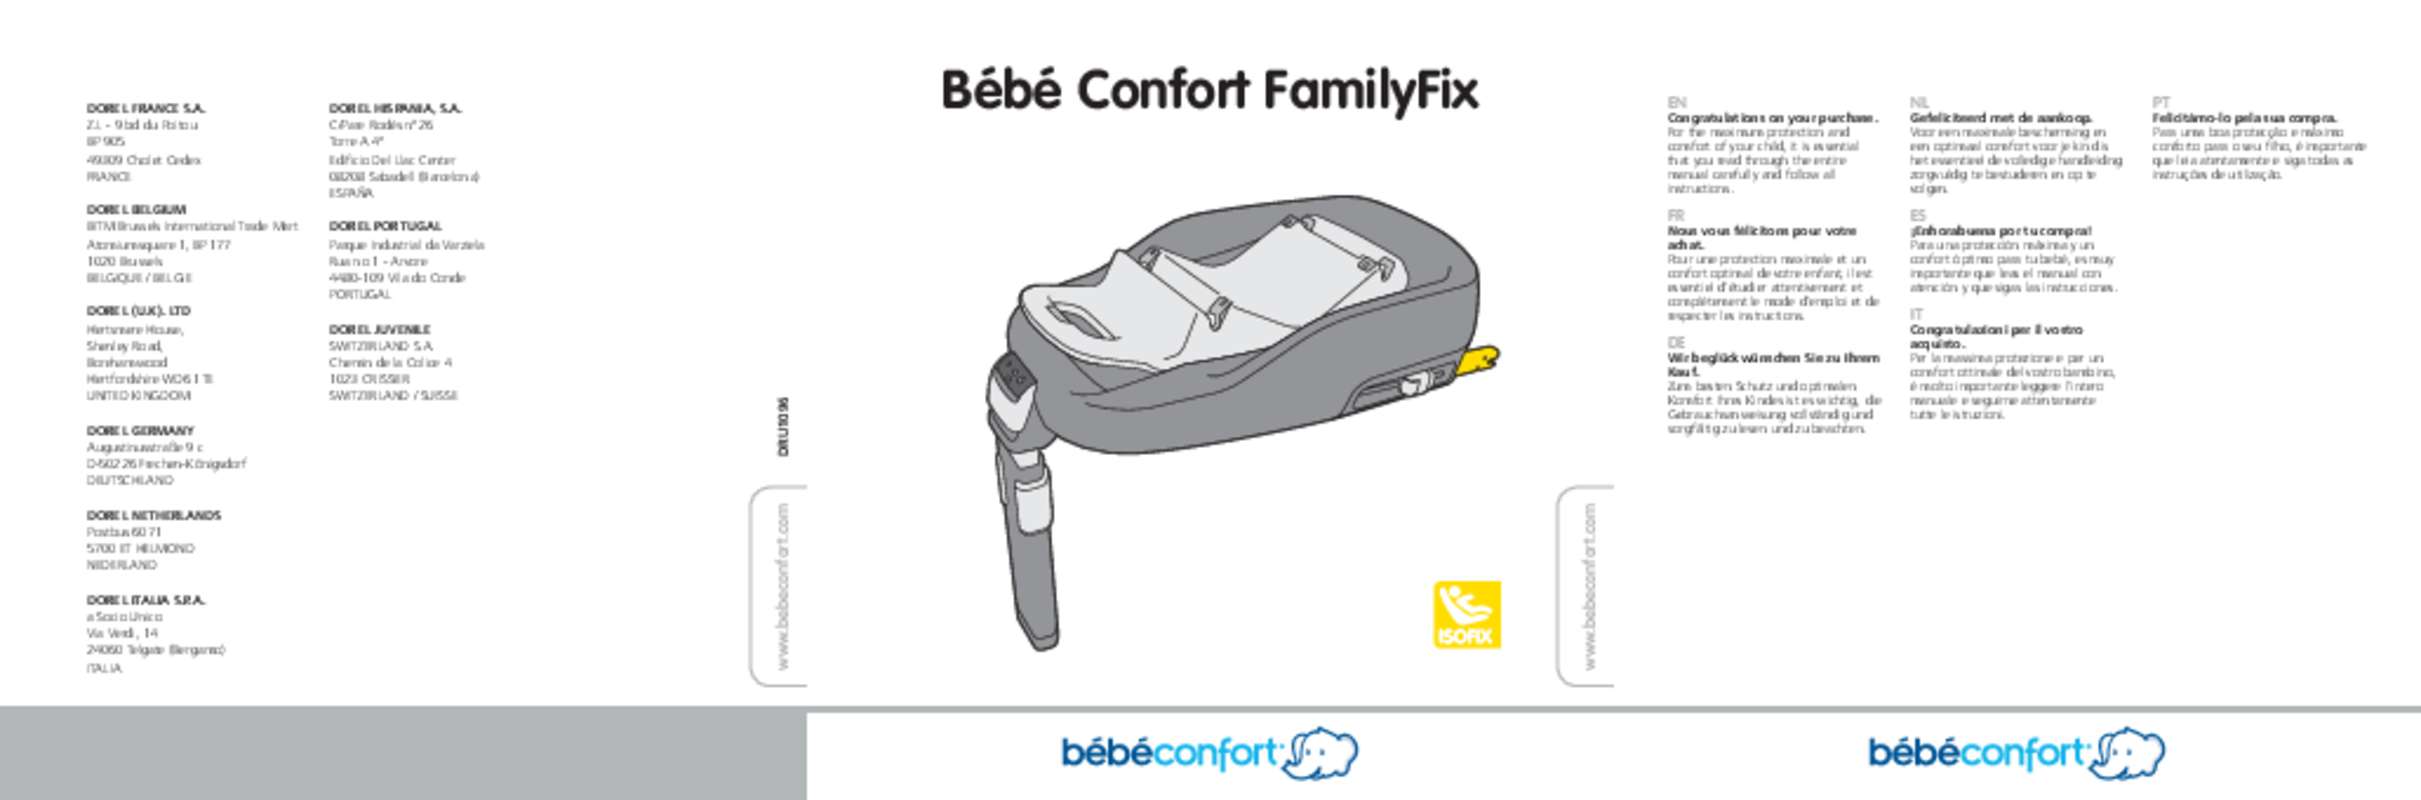 Guide utilisation BEBECONFORT FAMILYFIX  de la marque BEBECONFORT